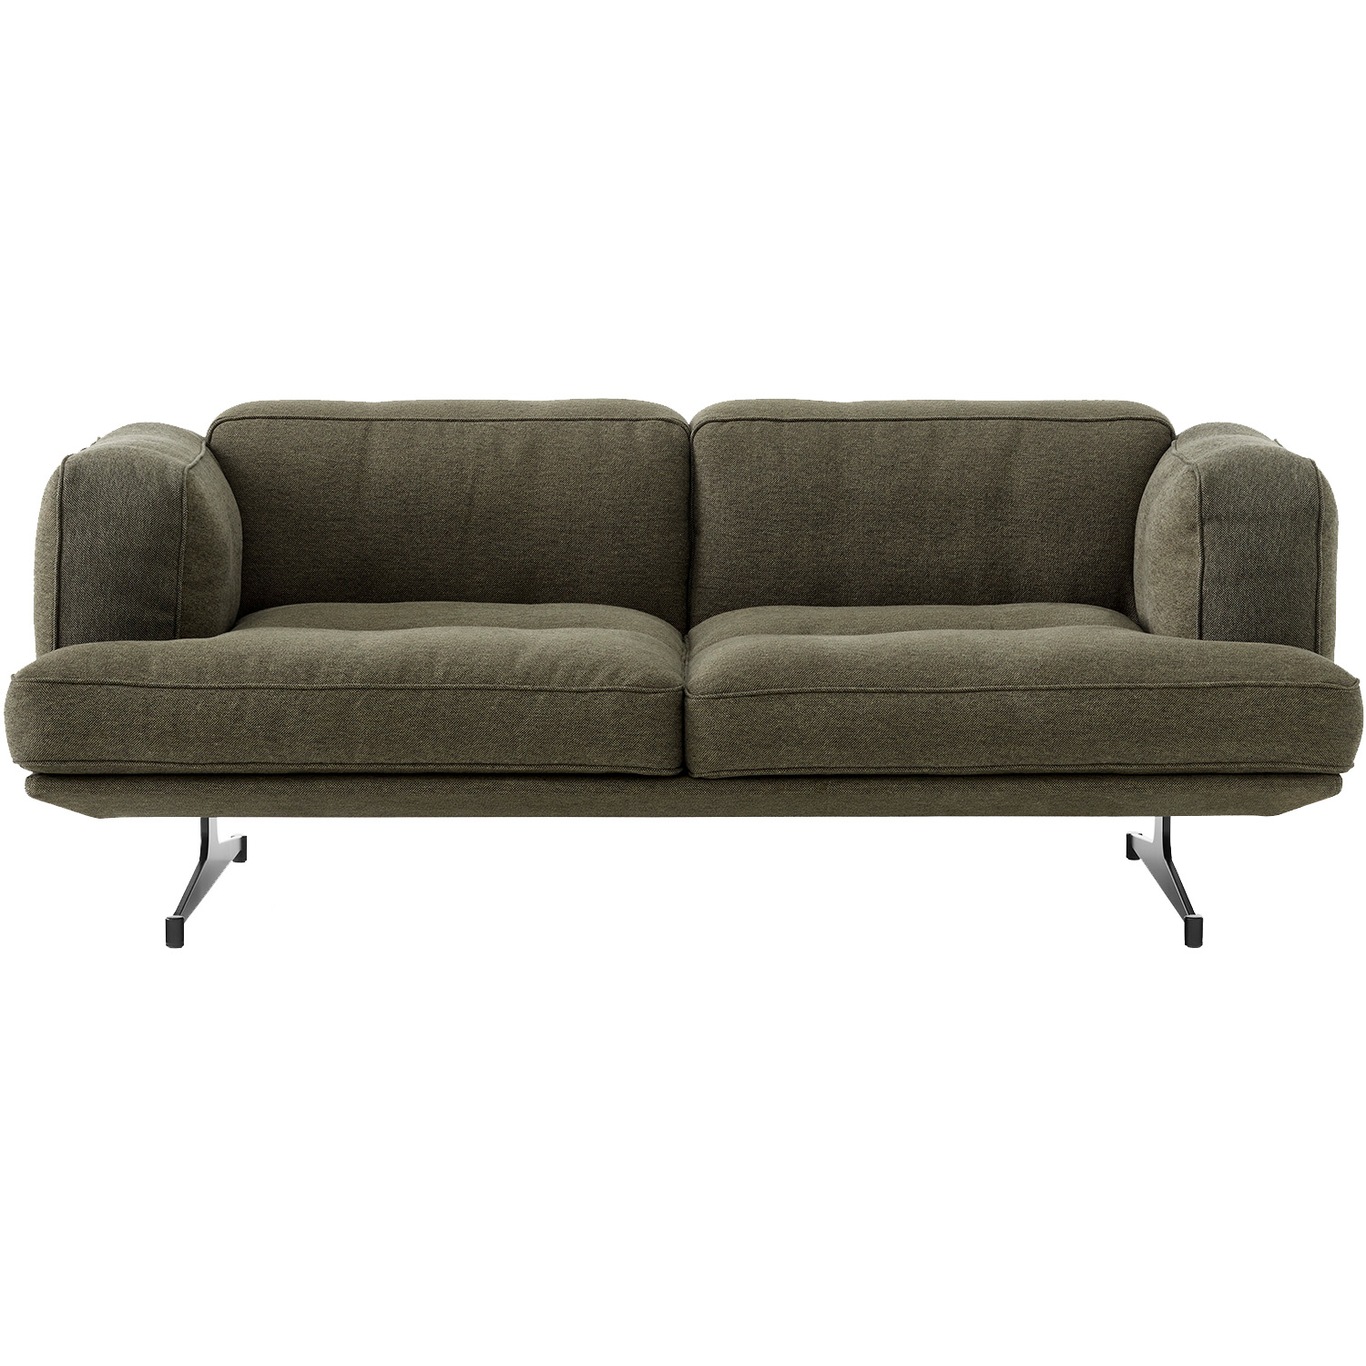 Inland AV23 3-personers Sofa, Clay 0014